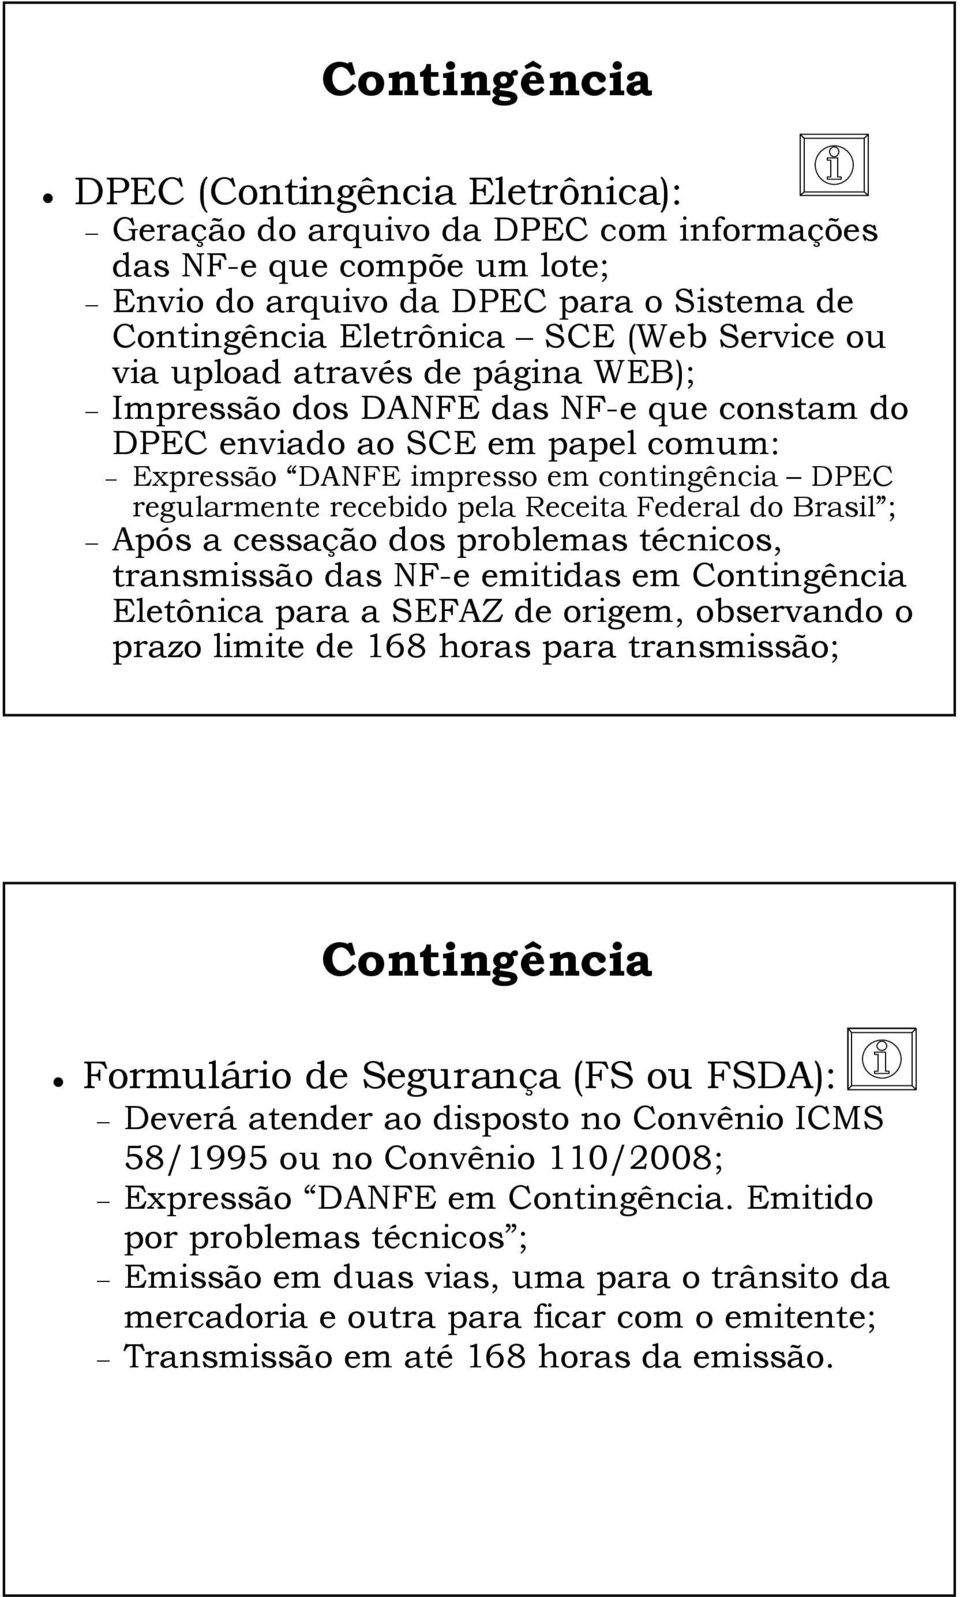 Receita Federal do Brasil ; Após a cessação dos problemas técnicos, transmissão das NF-e emitidas em Contingência Eletônica para a SEFAZ de origem, observando o prazo limite de 168 horas para